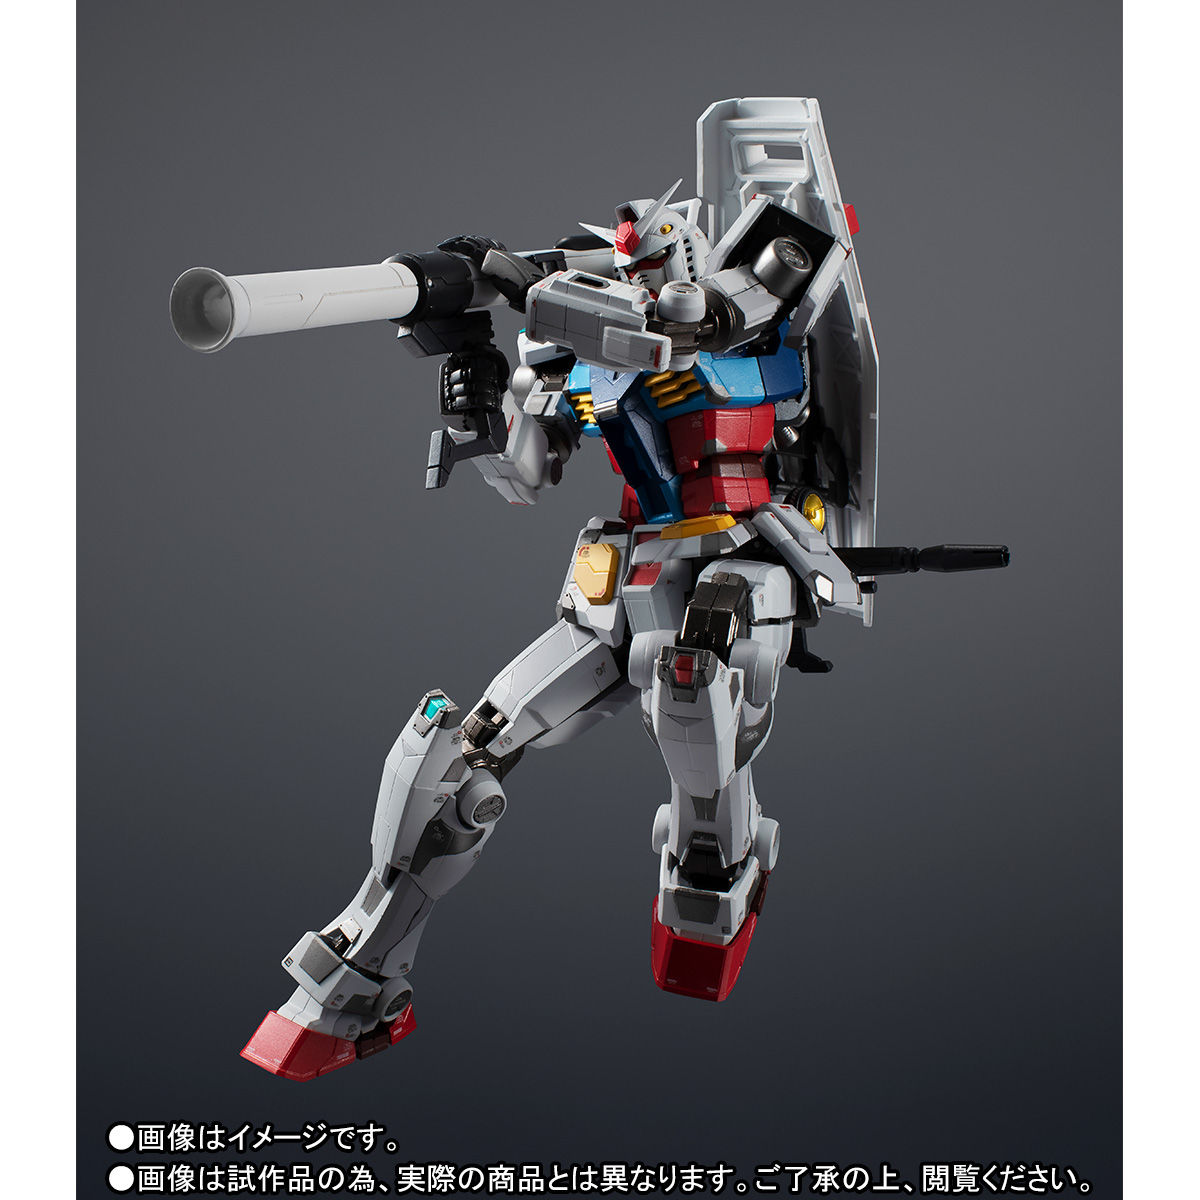 【限定販売】超合金×GUNDAM FACTORY YOKOHAMA『RX-78F00 GUNDAM』可動フィギュア-006